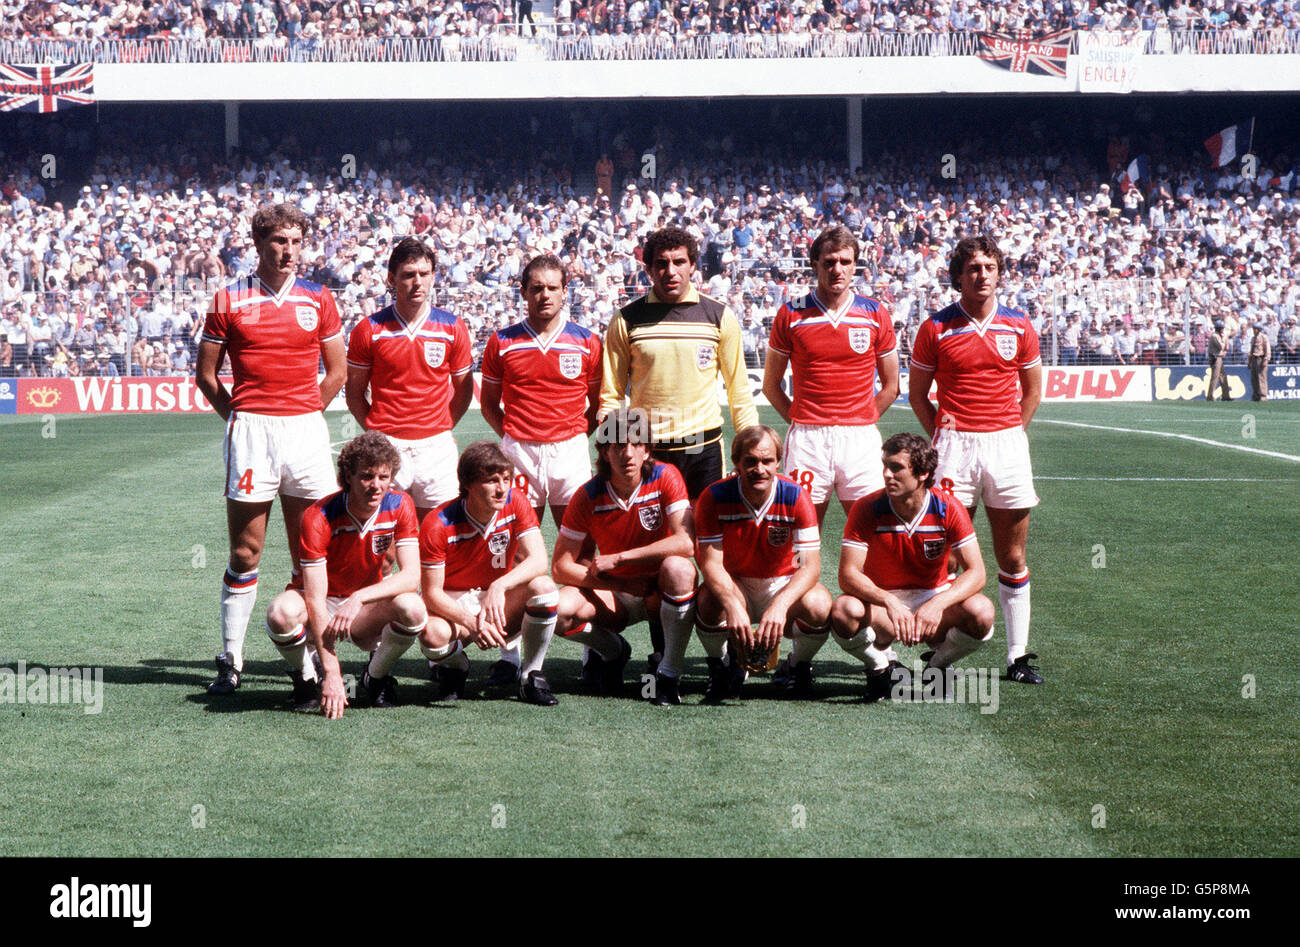 Équipe de l'Angleterre - Espagne Coupe du Monde 1982 Banque D'Images